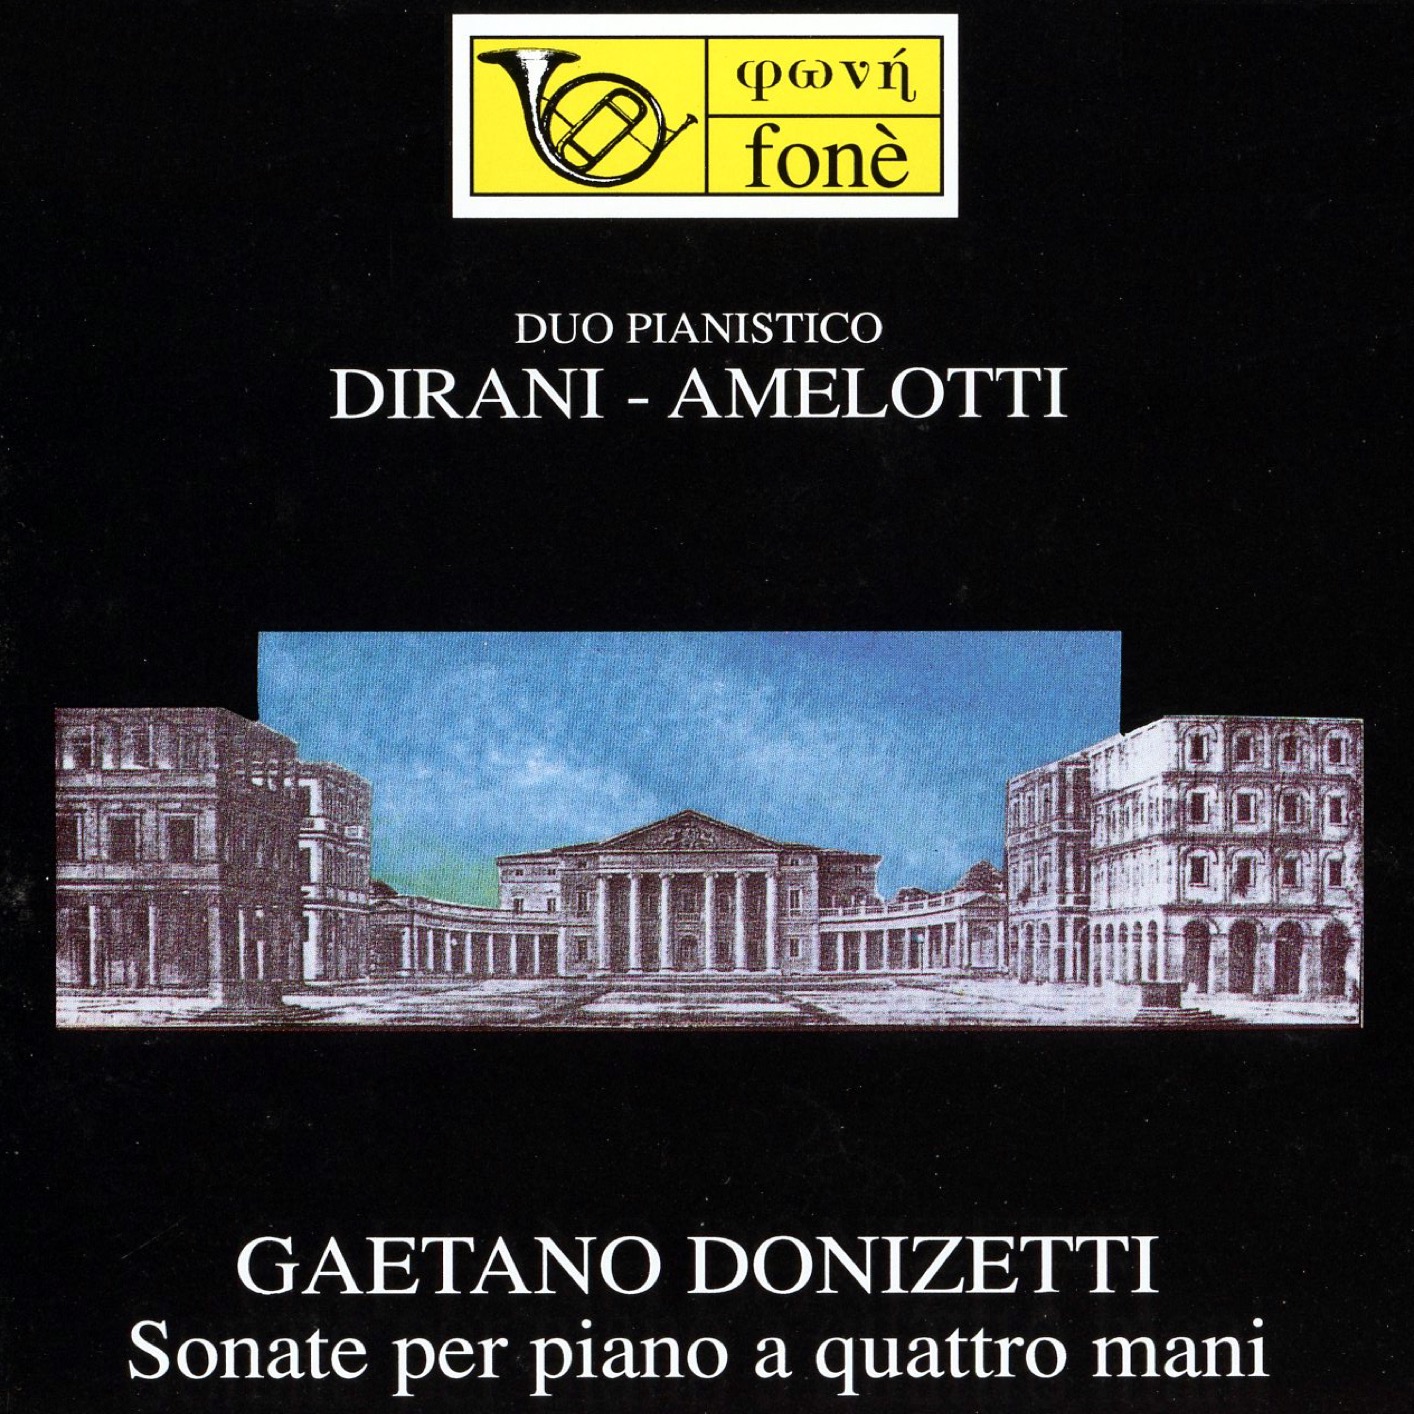 Paolo Dirani, Ferruccio Amelotti - Gaetano Donizetti - Sonate per piano a quattro mani (Remastered) (1991/2023) [FLAC 24bit/48kHz]